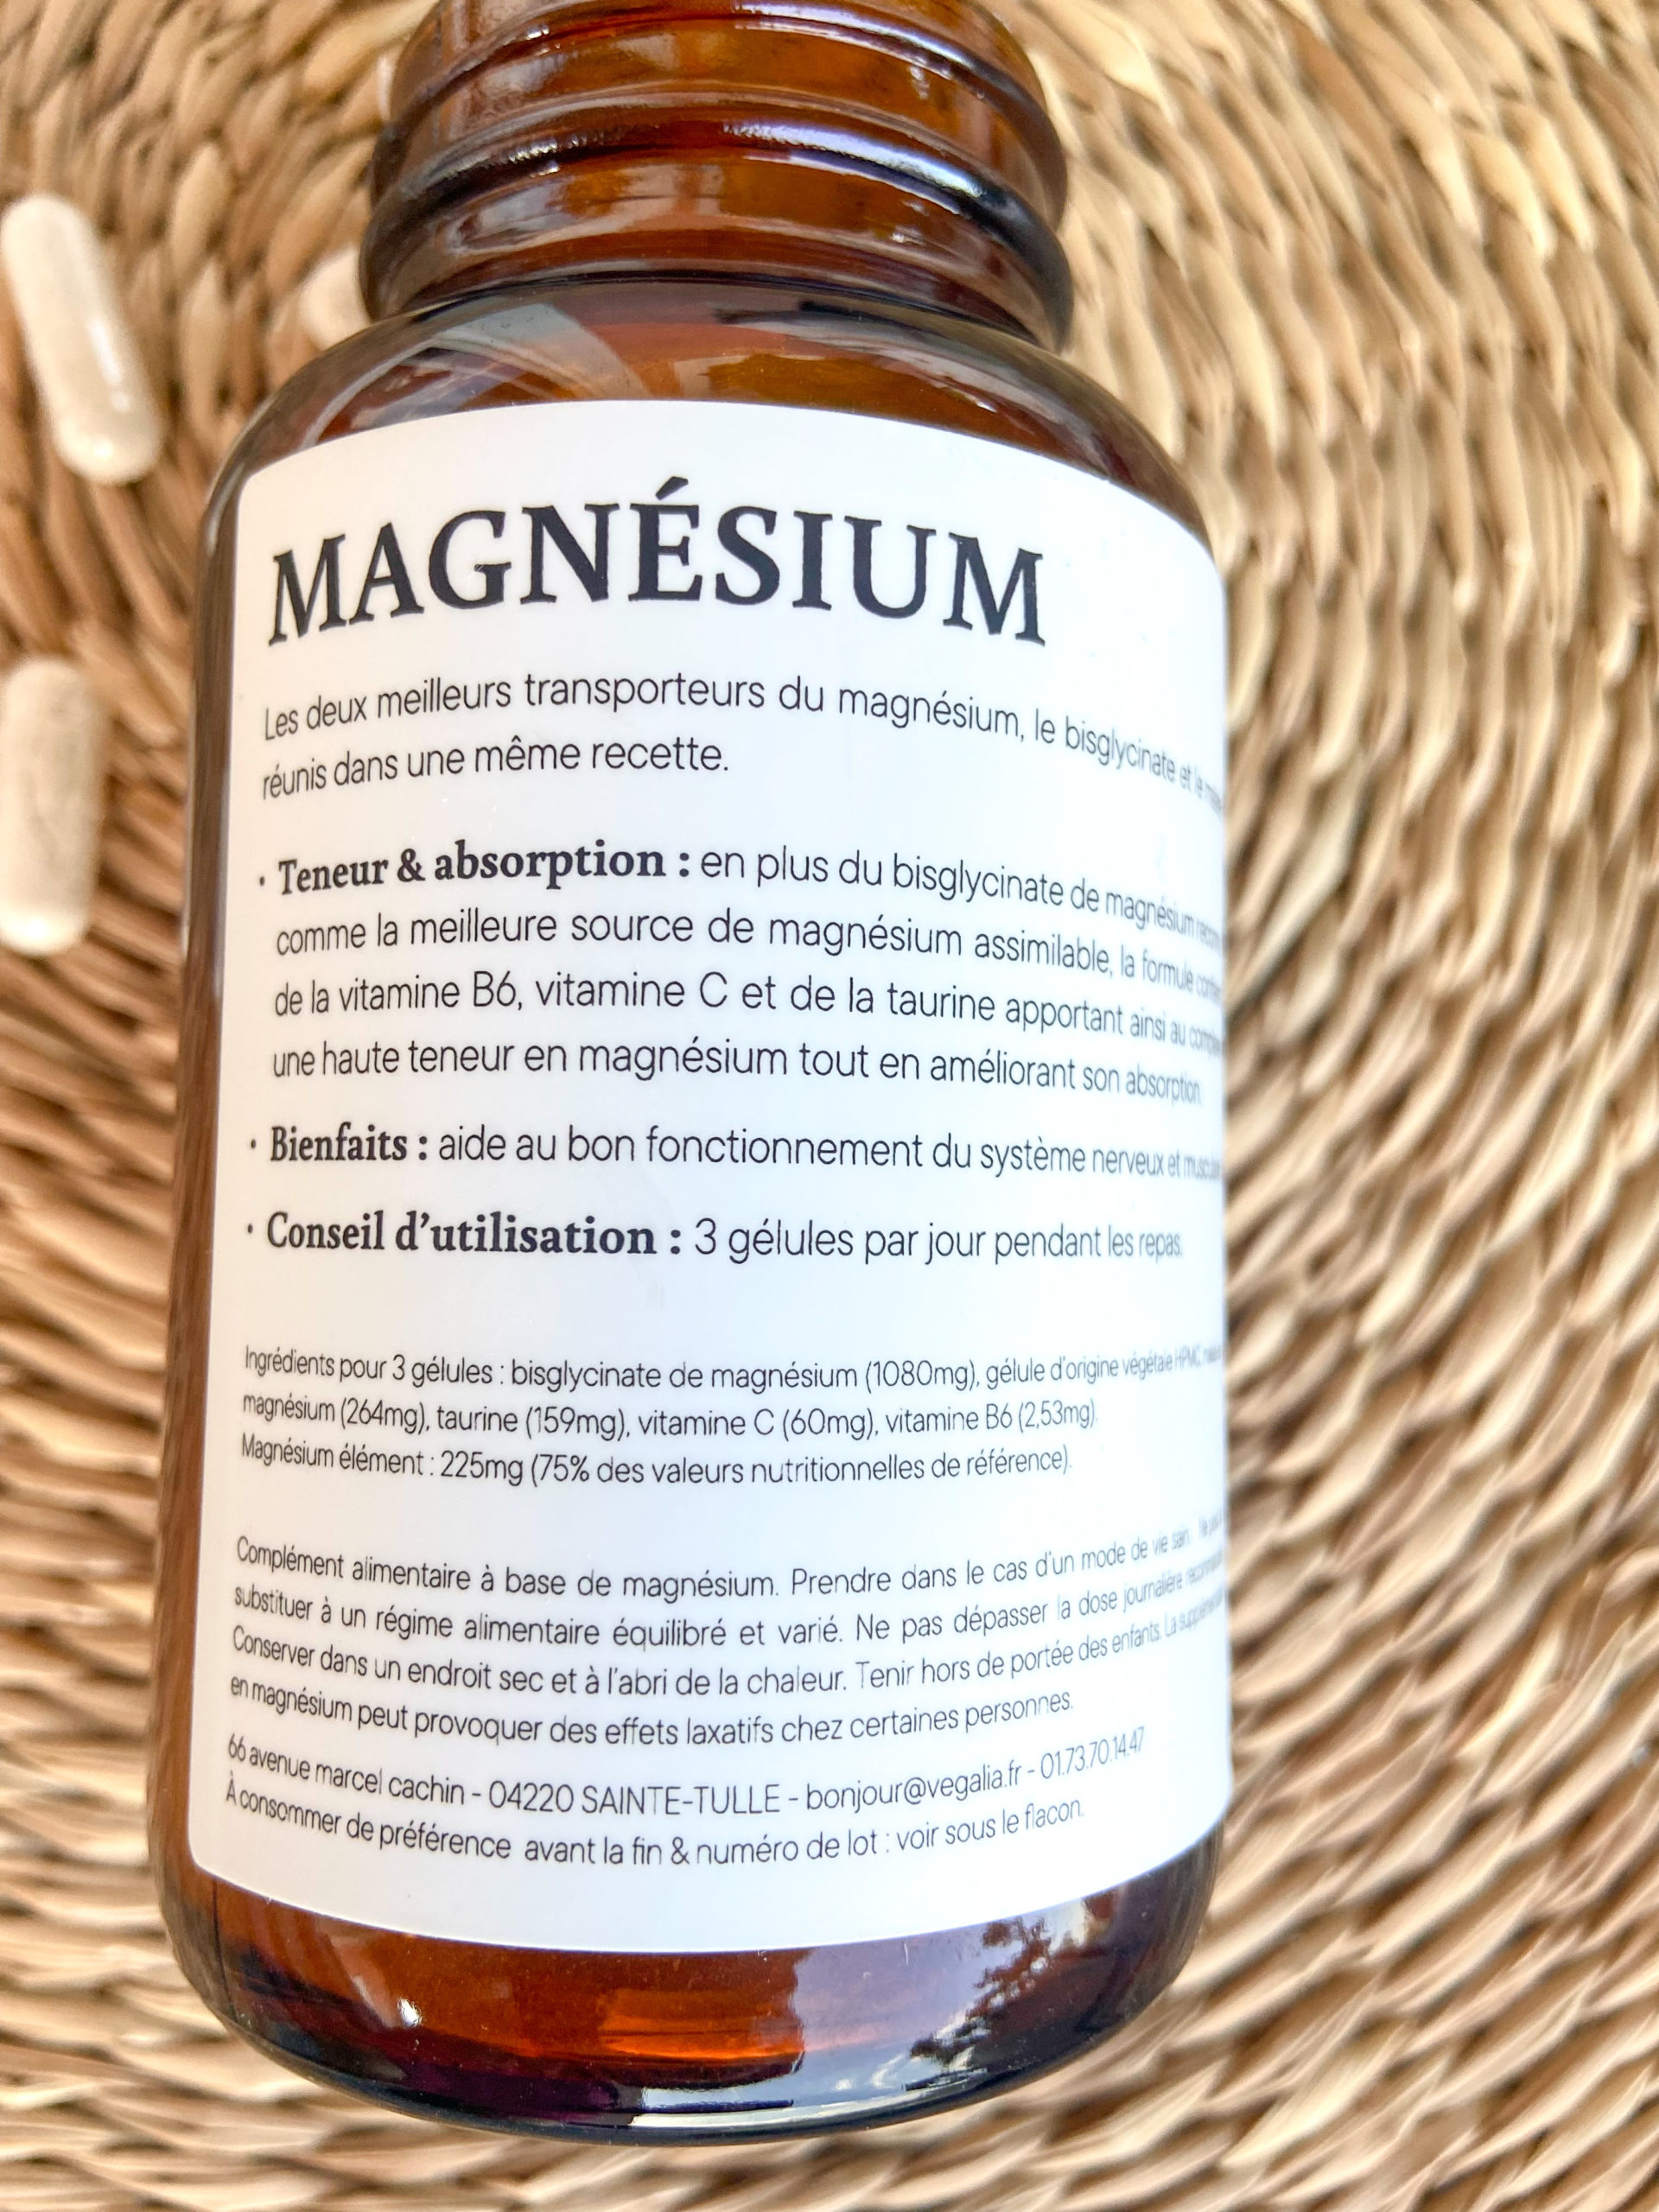 cure-magnesium-vegalia-code-promo-